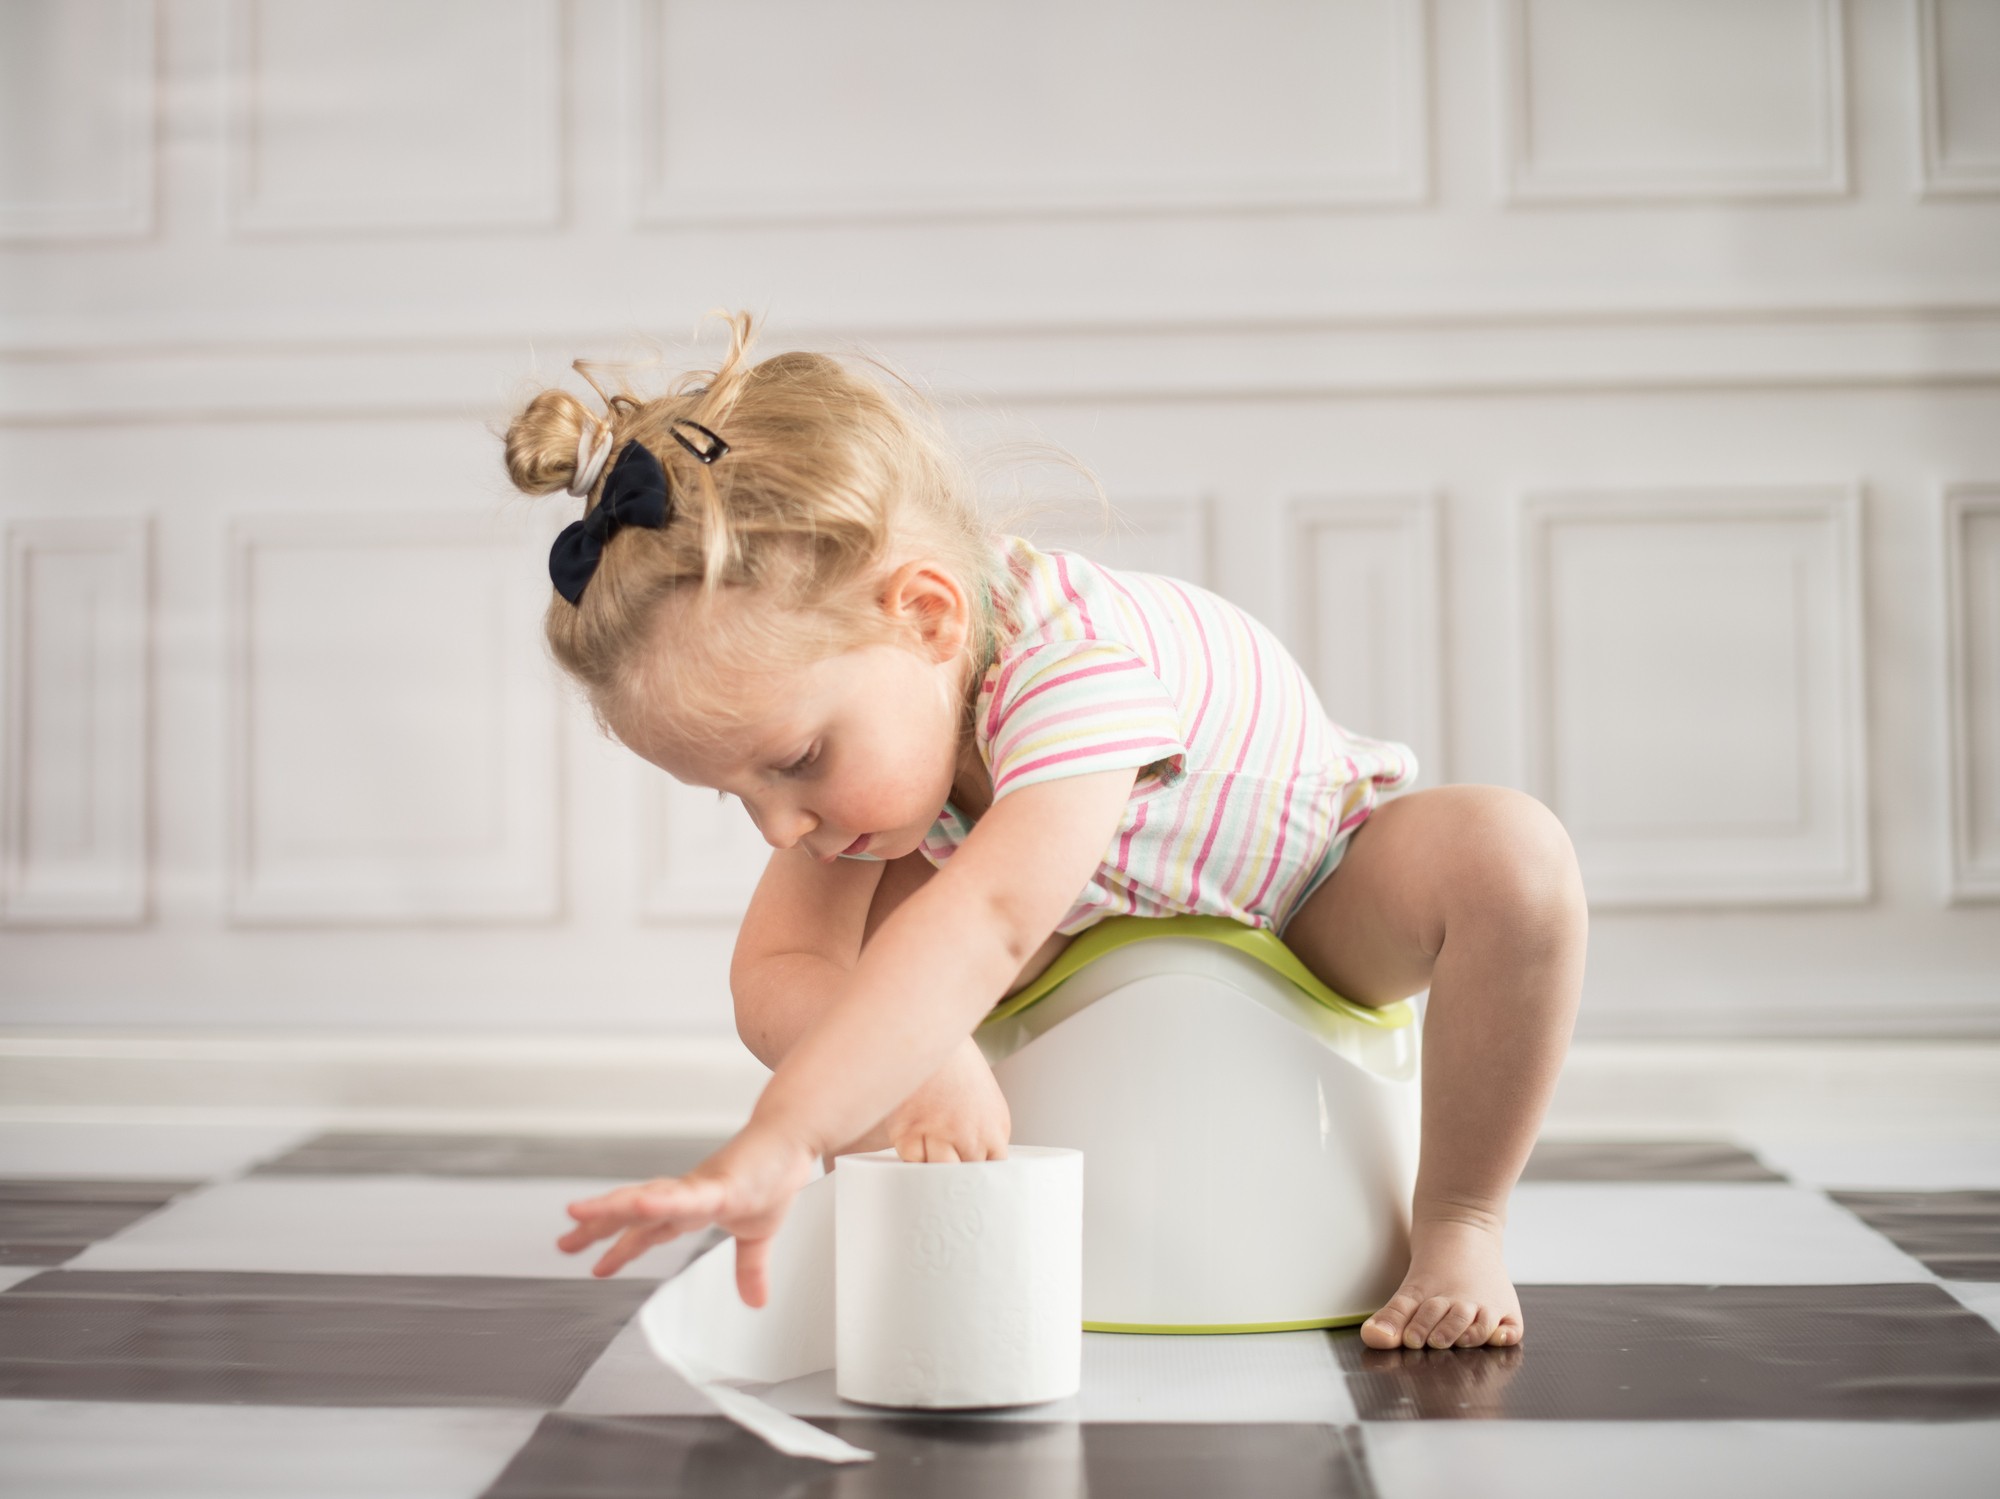 Cada criança tem seu tempo para começar o desfralde e se acostumar a usar o vaso (Foto: Thinkstock)